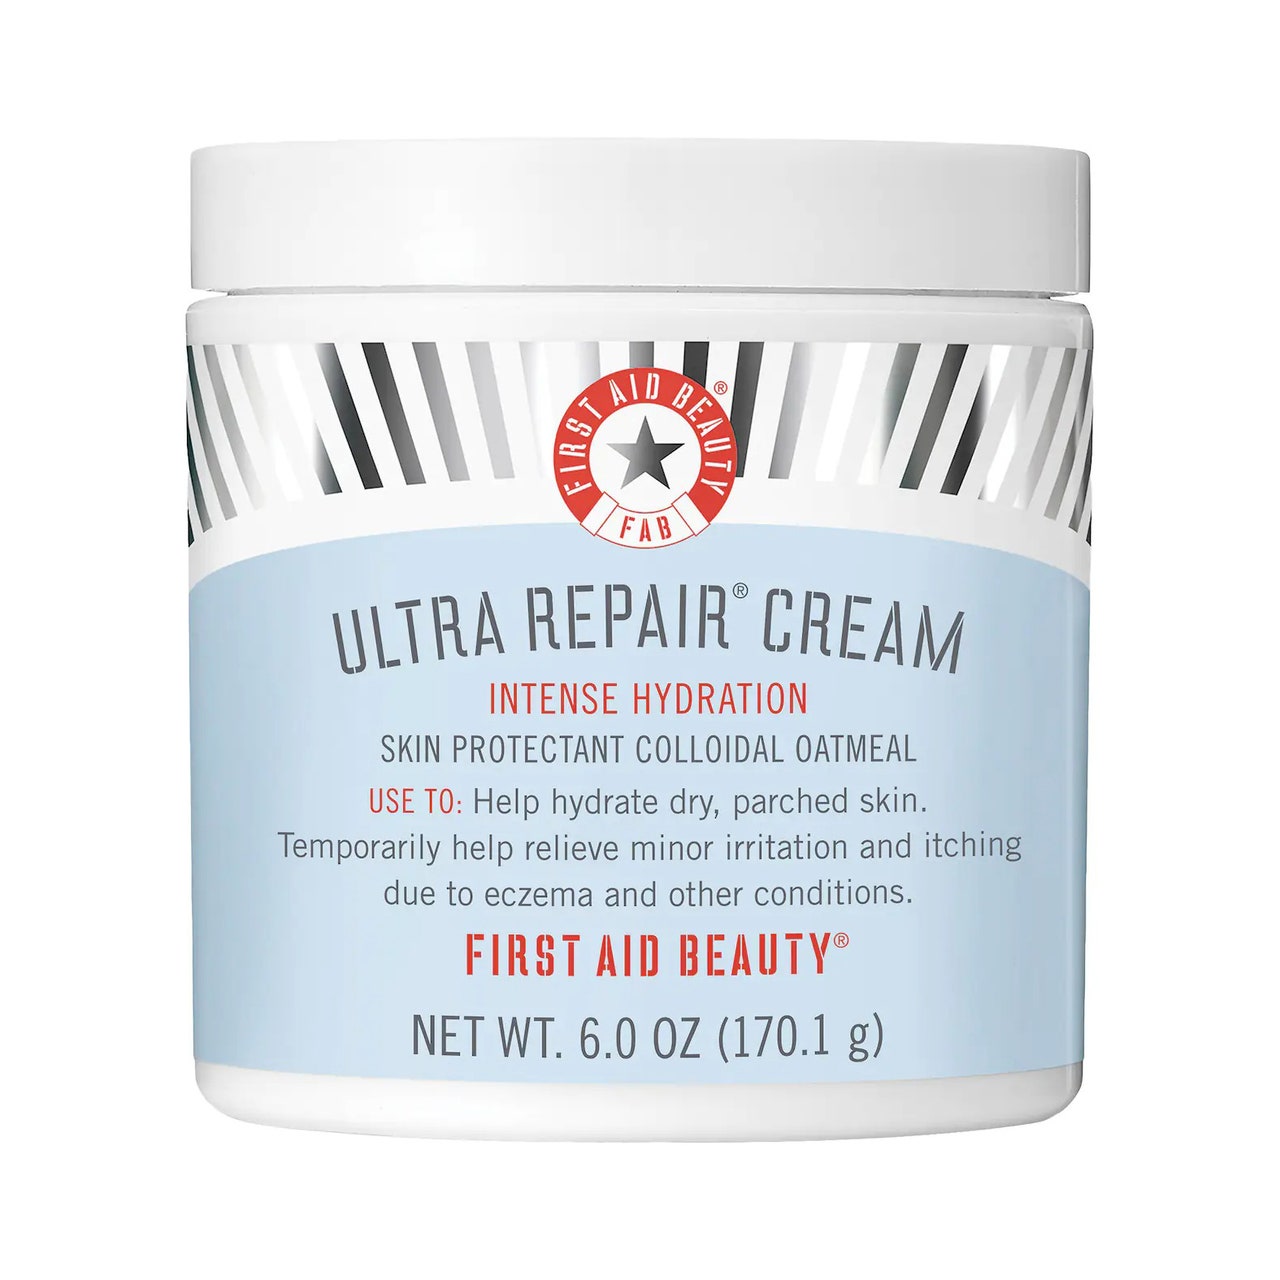 Erste Hilfe Beauty Ultra Repair Cream hellblau-weißes Glas mit silbernen Streifen auf weißem Hintergrund